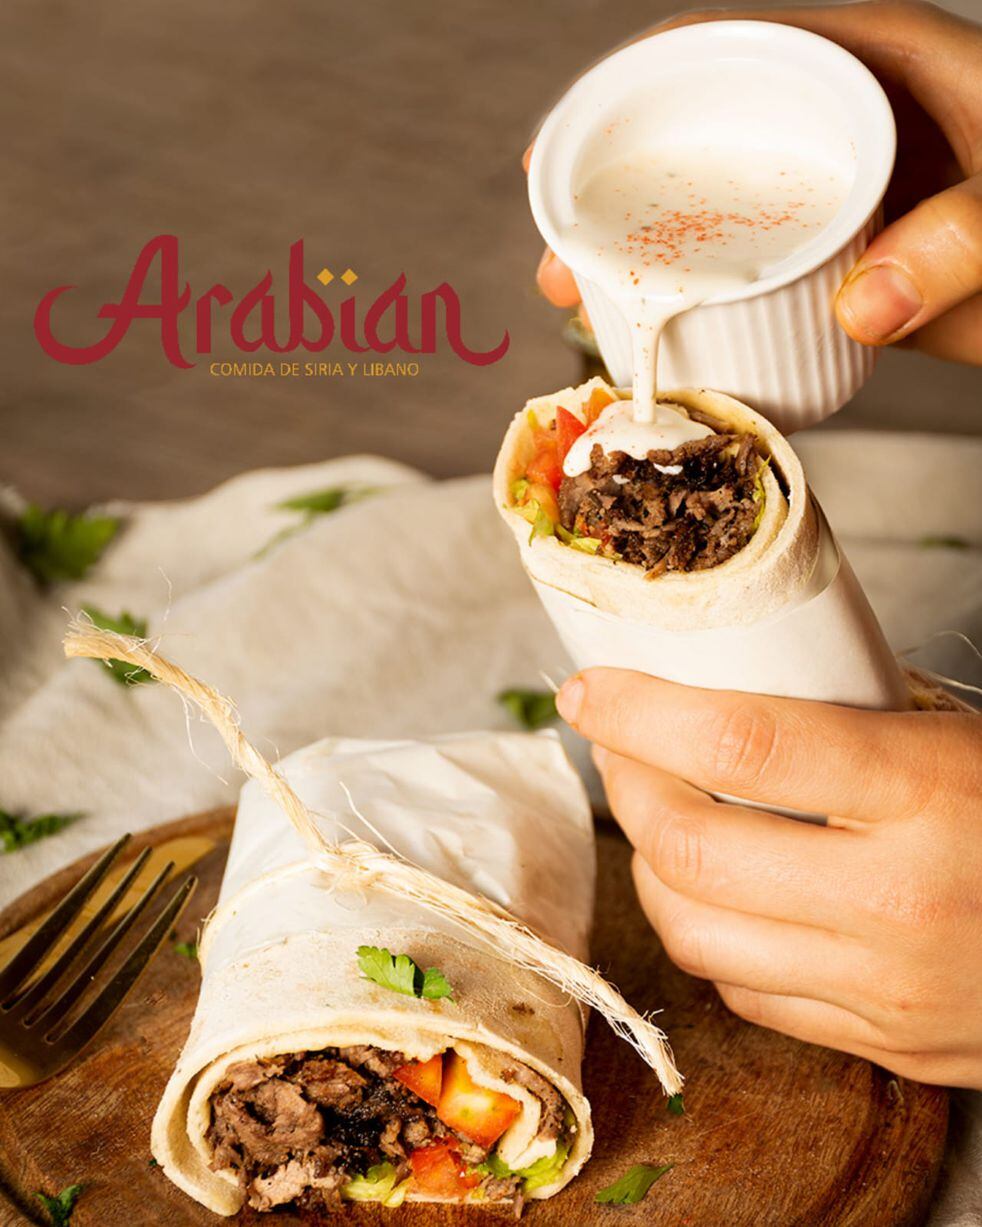 Uno de los platos típicos de "Arabian", el emprendimiento de comida árabe y libanesa que tienen Haneen y Besim en La Pampa.